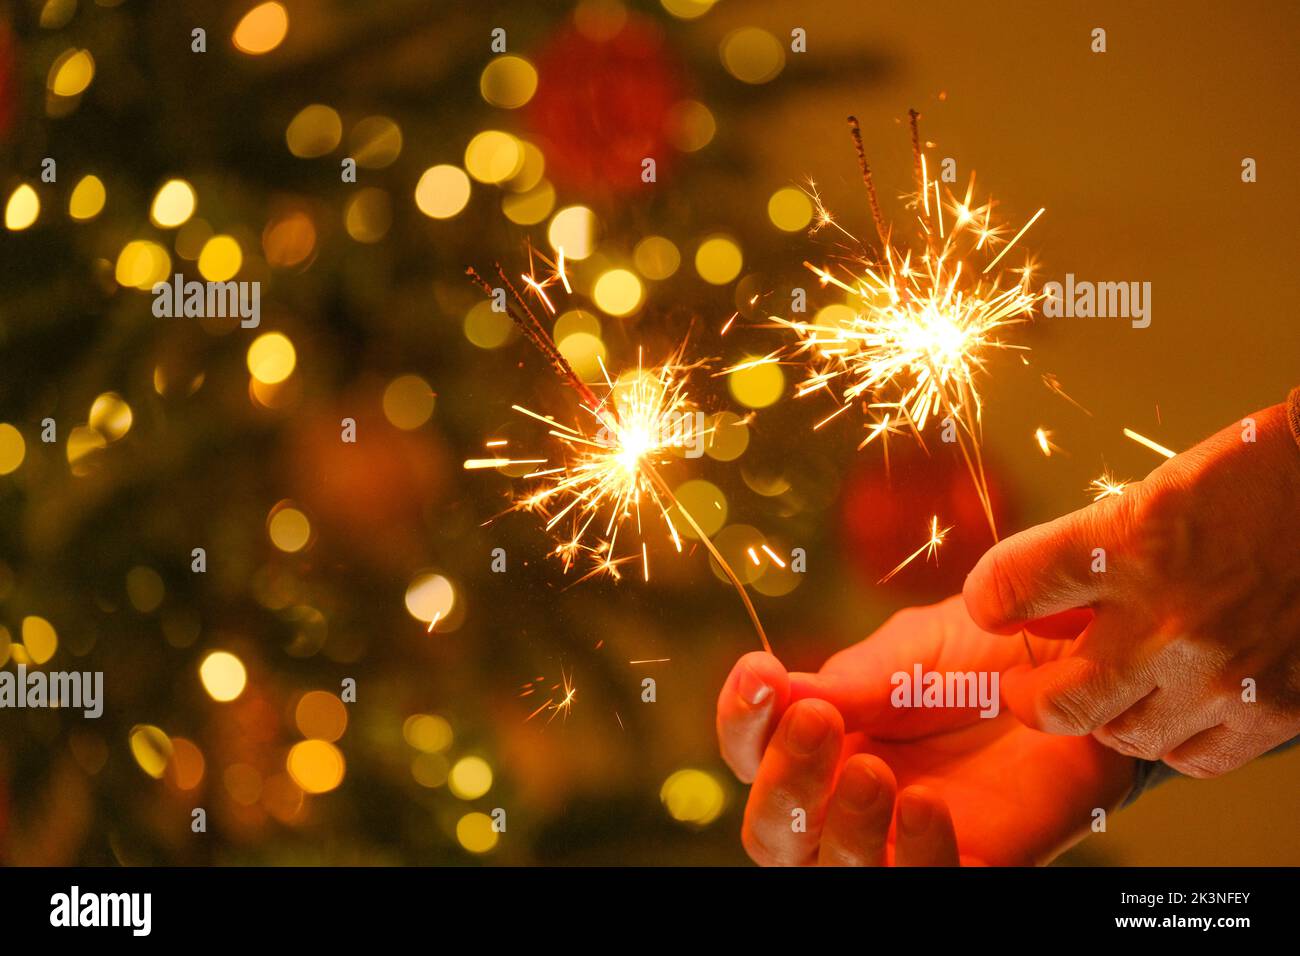 Fête de Noël. Feu bengale étincelant dans les mains.des lumières Bengale sur des guirlandes lumineuses sur un fond d'arbre de Noël festif.Noël brillant Banque D'Images